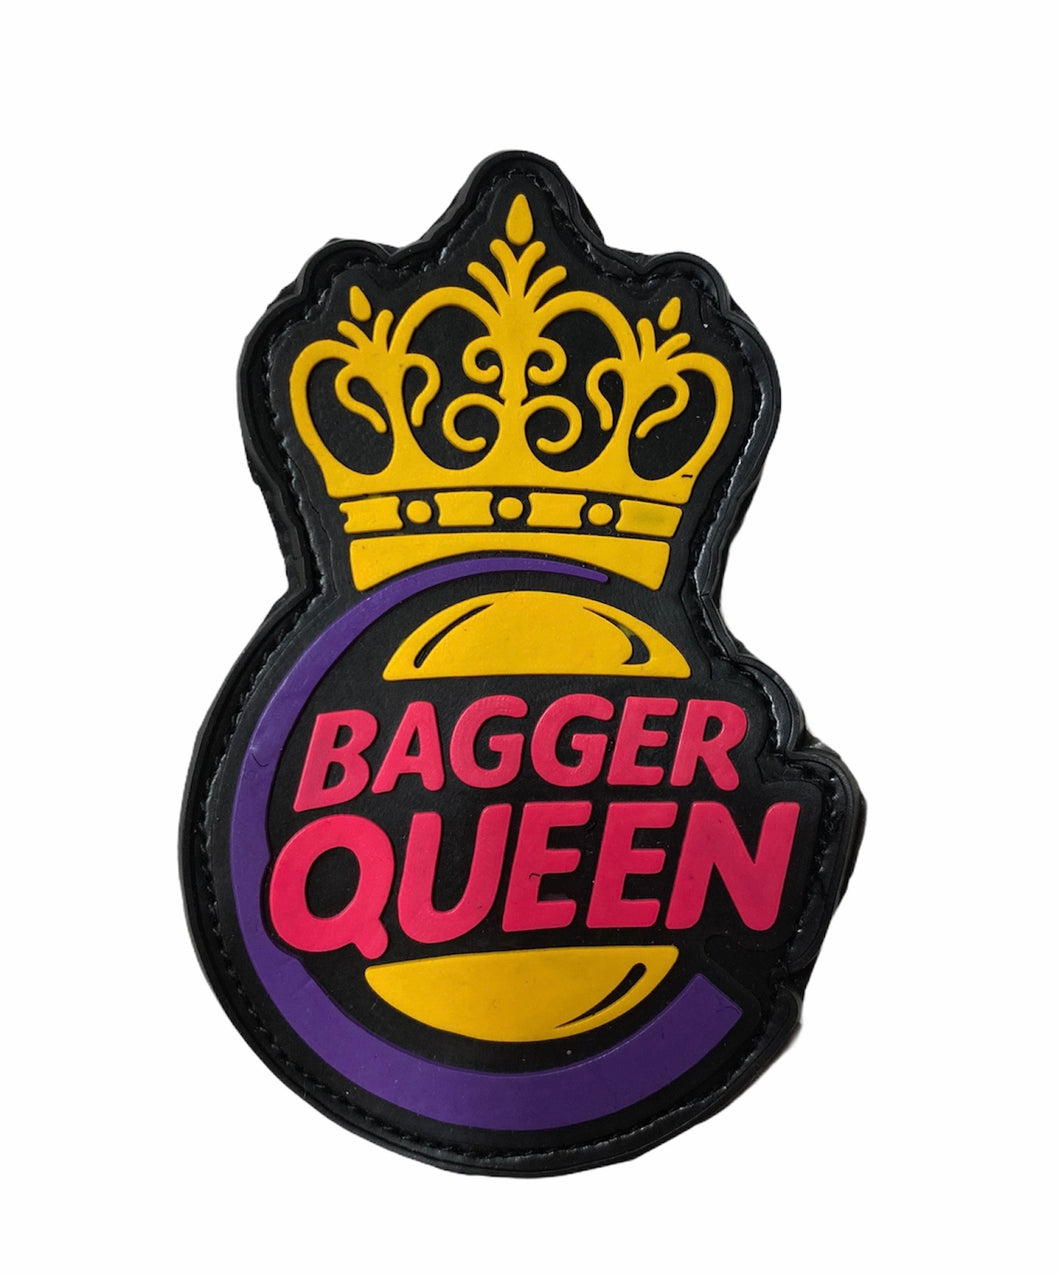 Bagger Queen Patch